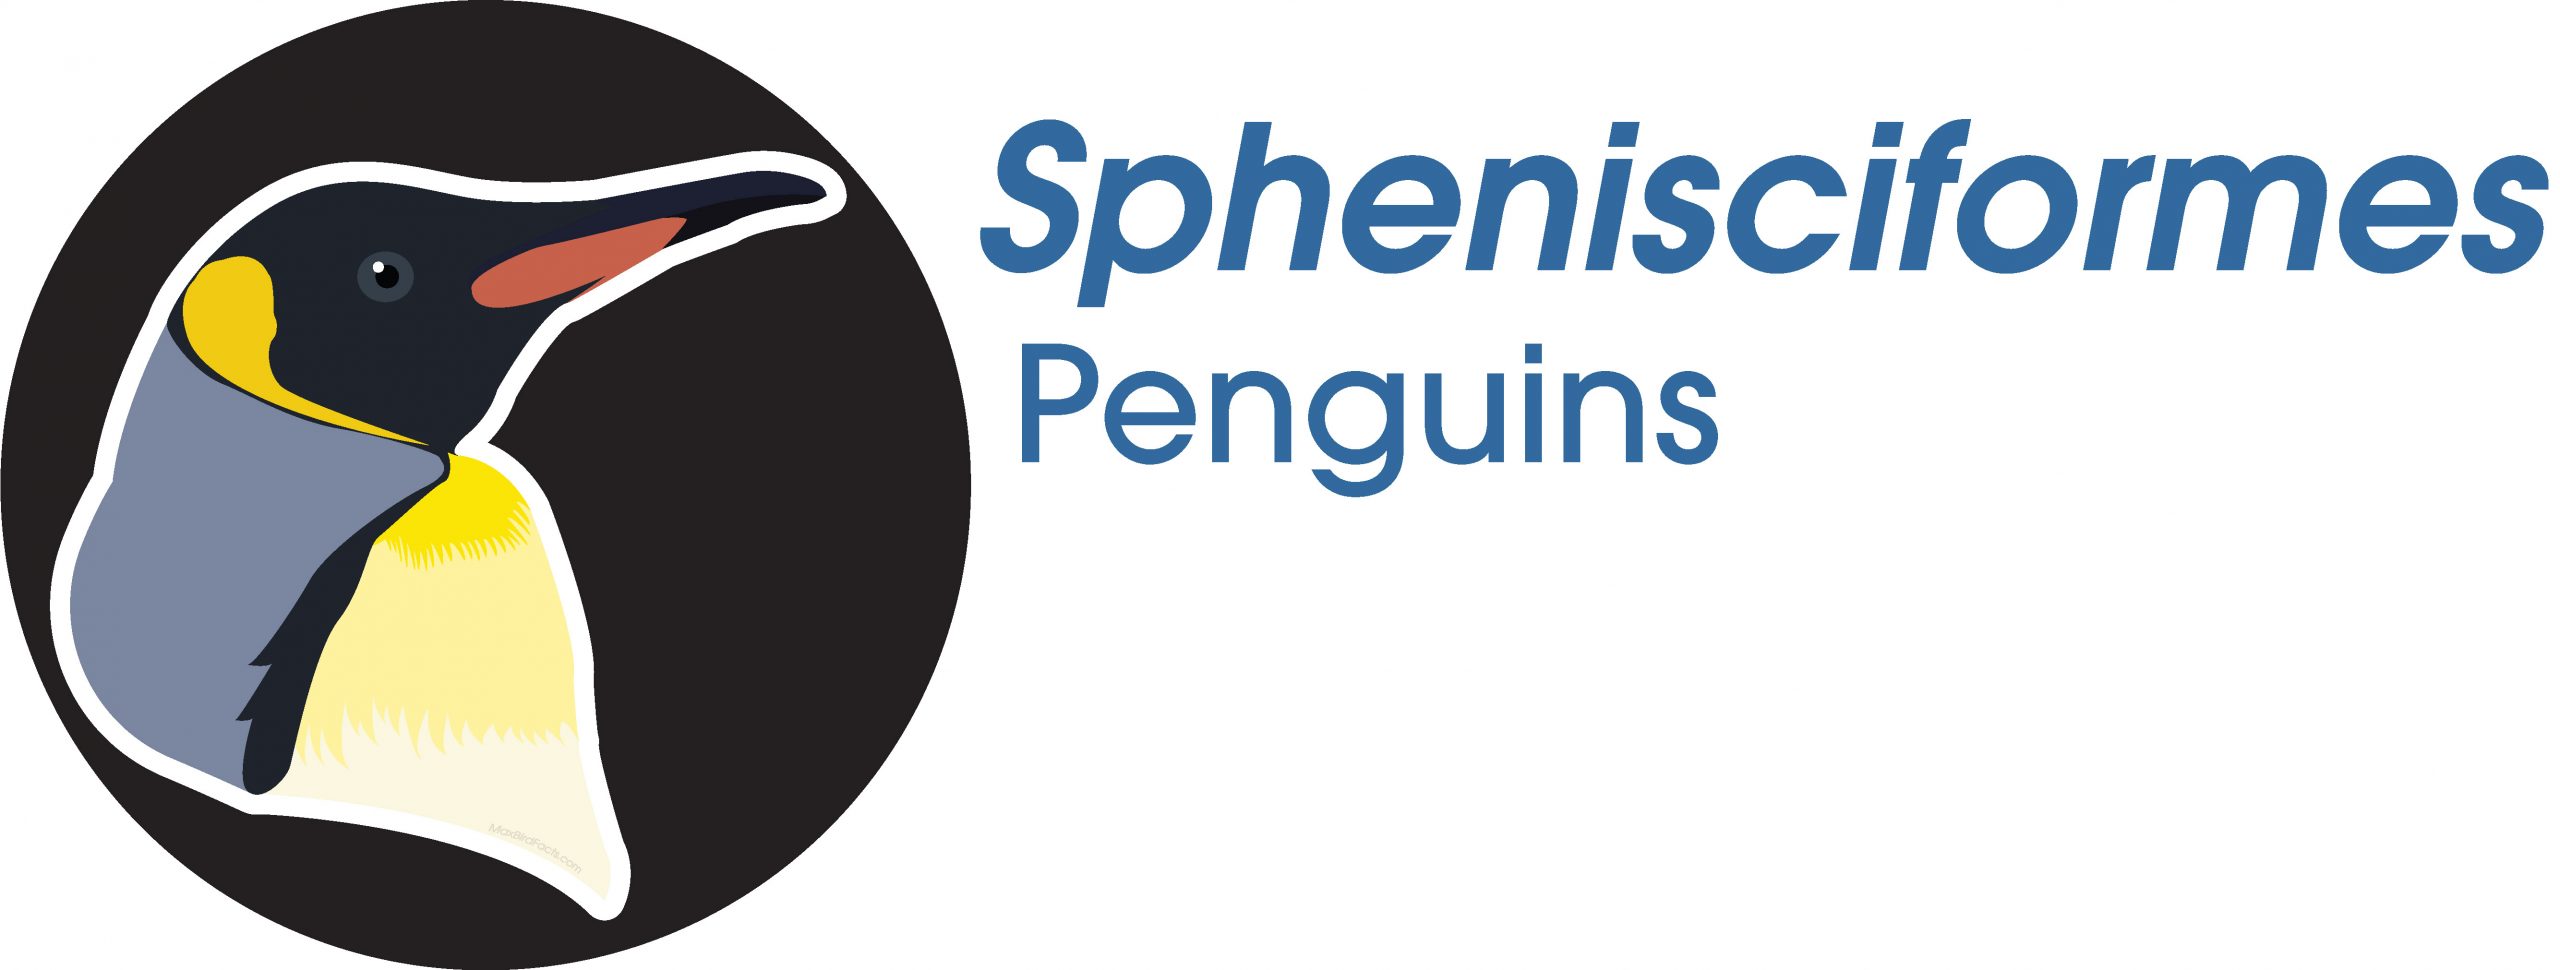 Sphenisciformes
Penguins
King Penguin